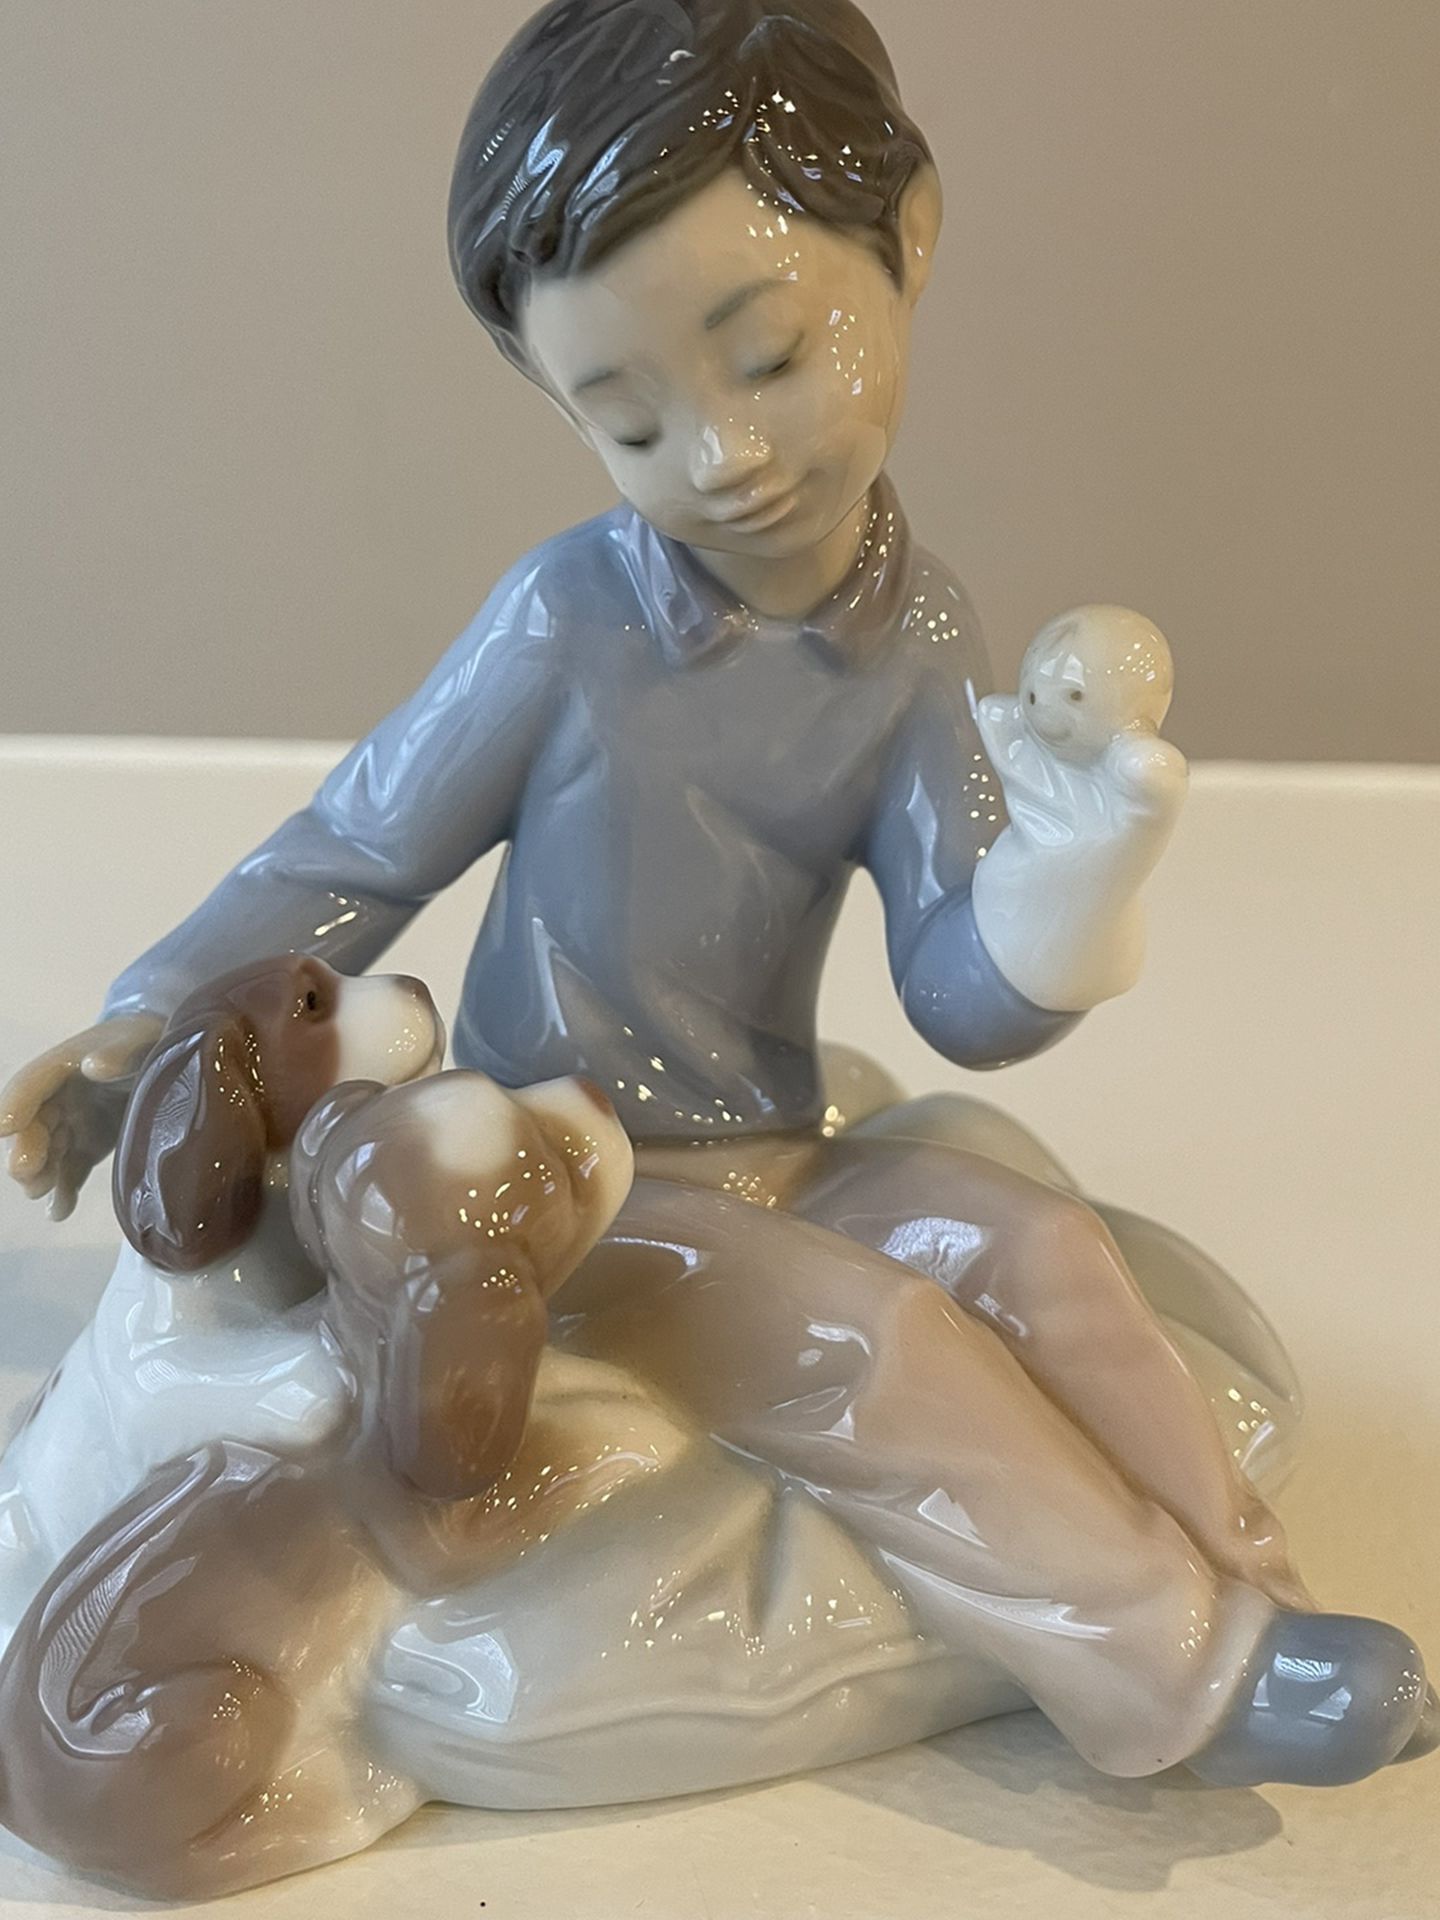 Lladro Boy “Puppet Show” Figurine